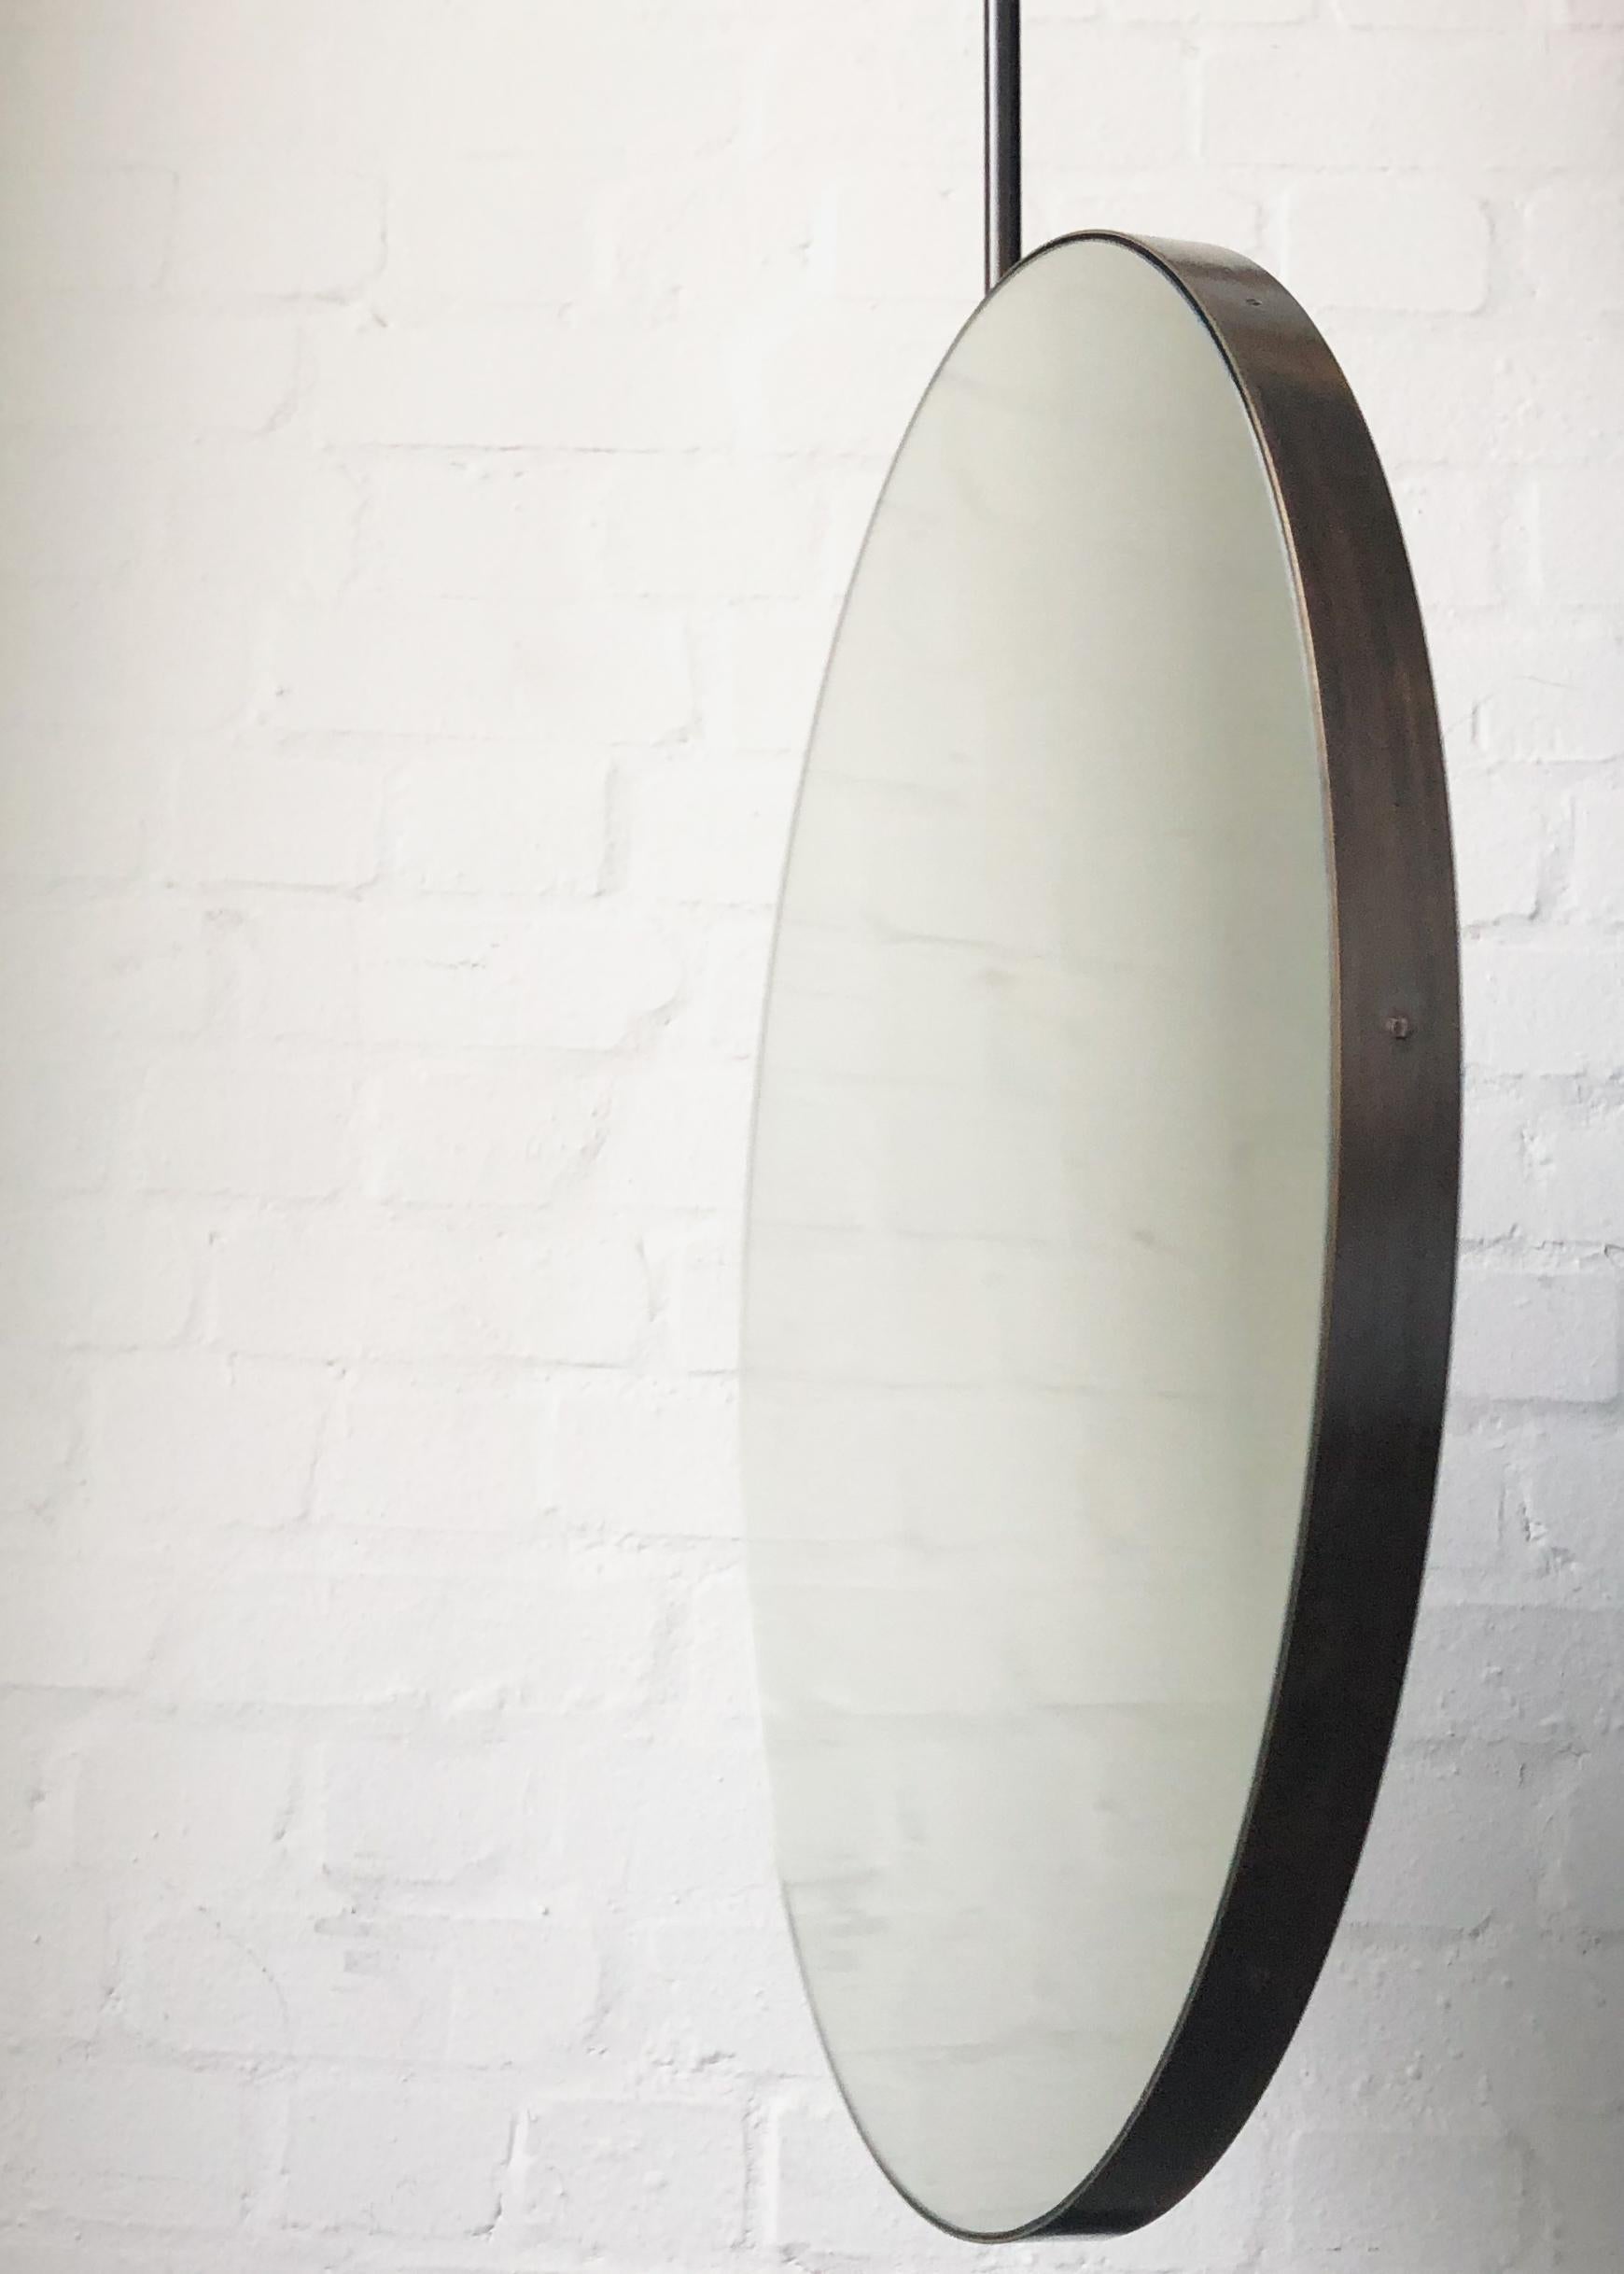 Industriel Miroir rond Handcraft suspendu au plafond Orbis avec cadre en laiton patiné bronze en vente